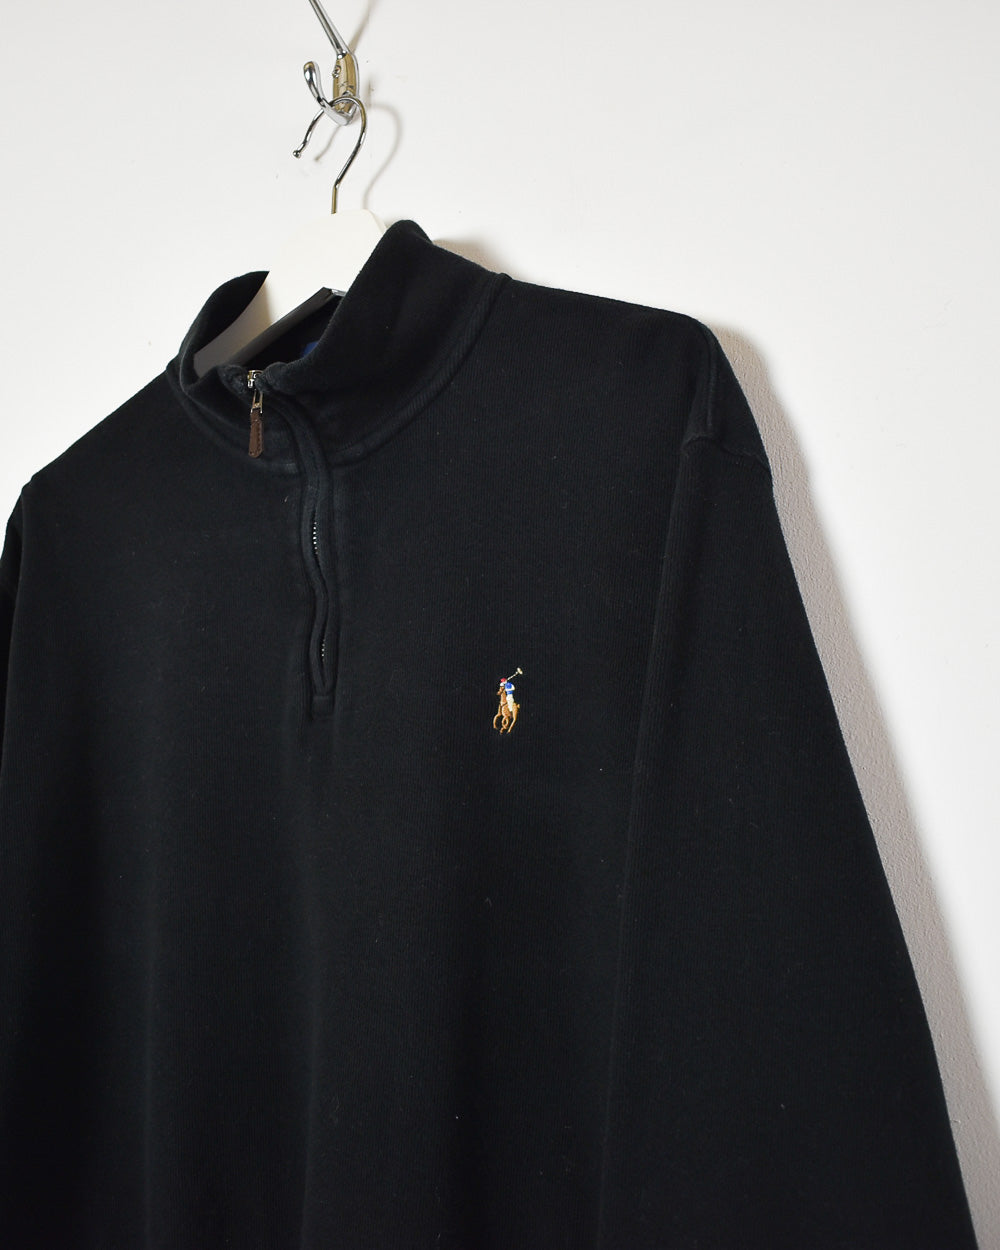 Black Ralph Lauren 1/4 Zip Sweatshirt - Large